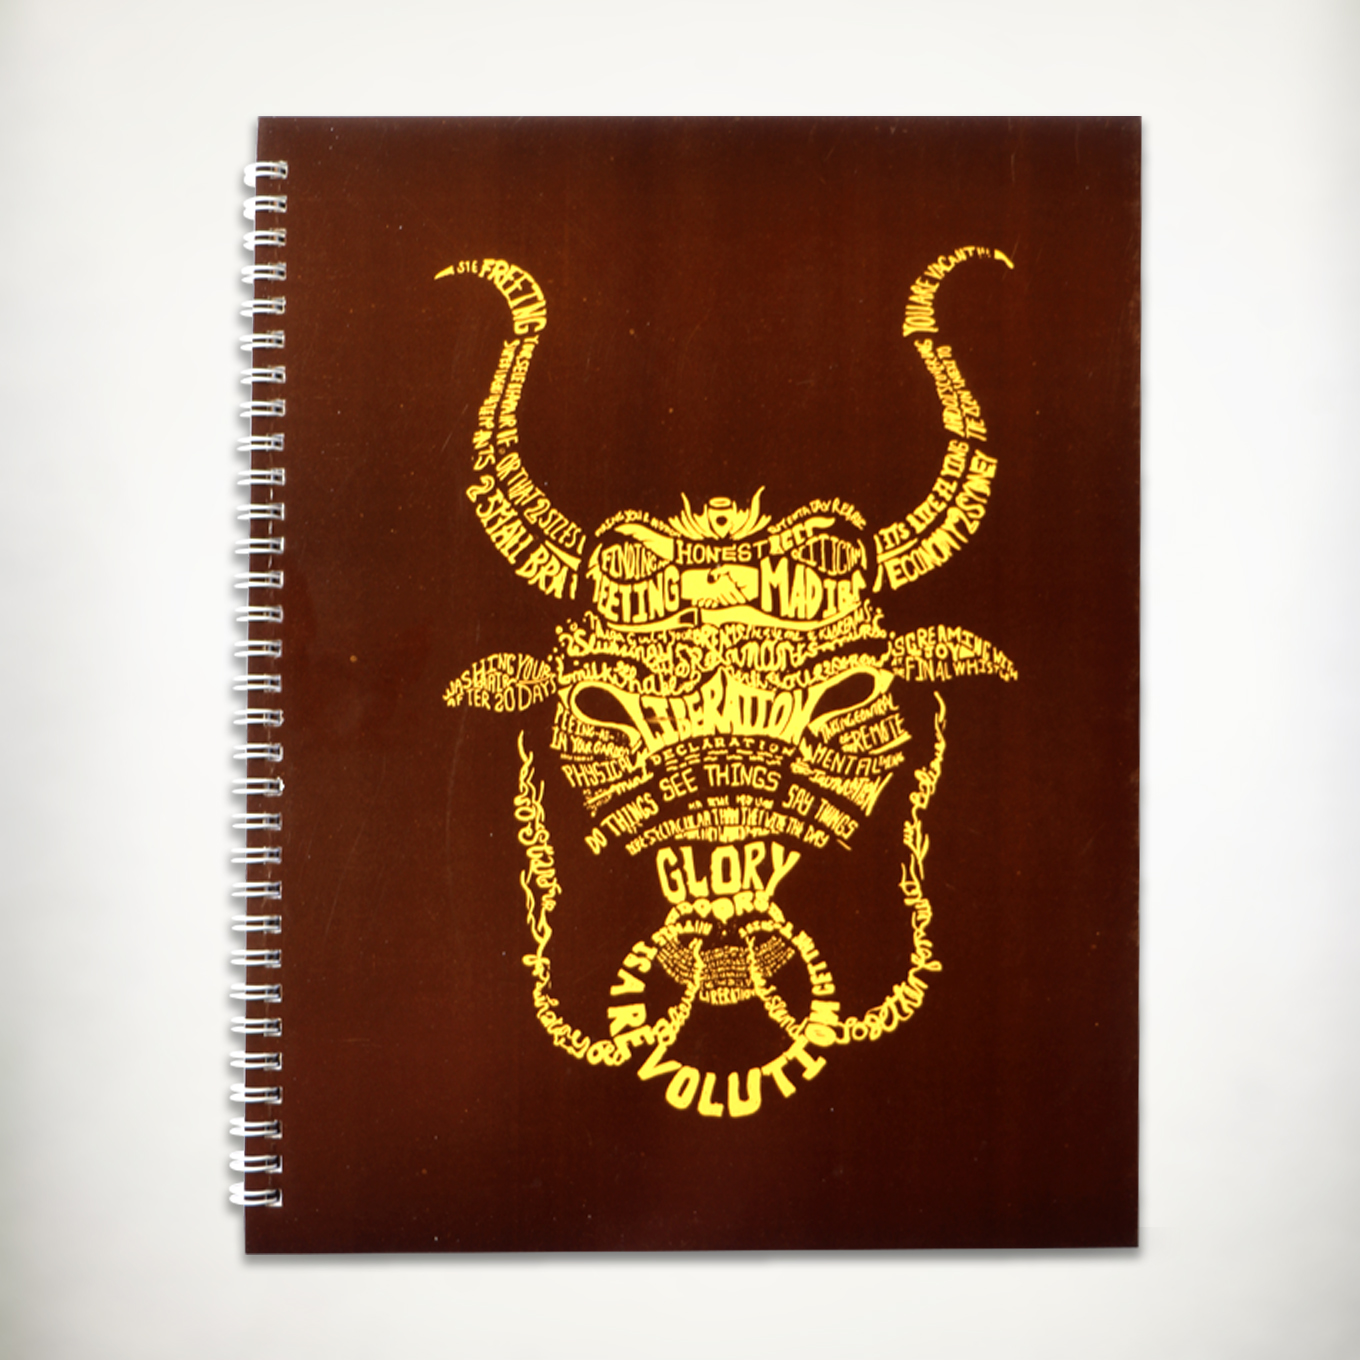 Spiral Notebook A4 - Revolutionary Bulls Yellow - By Paperwork